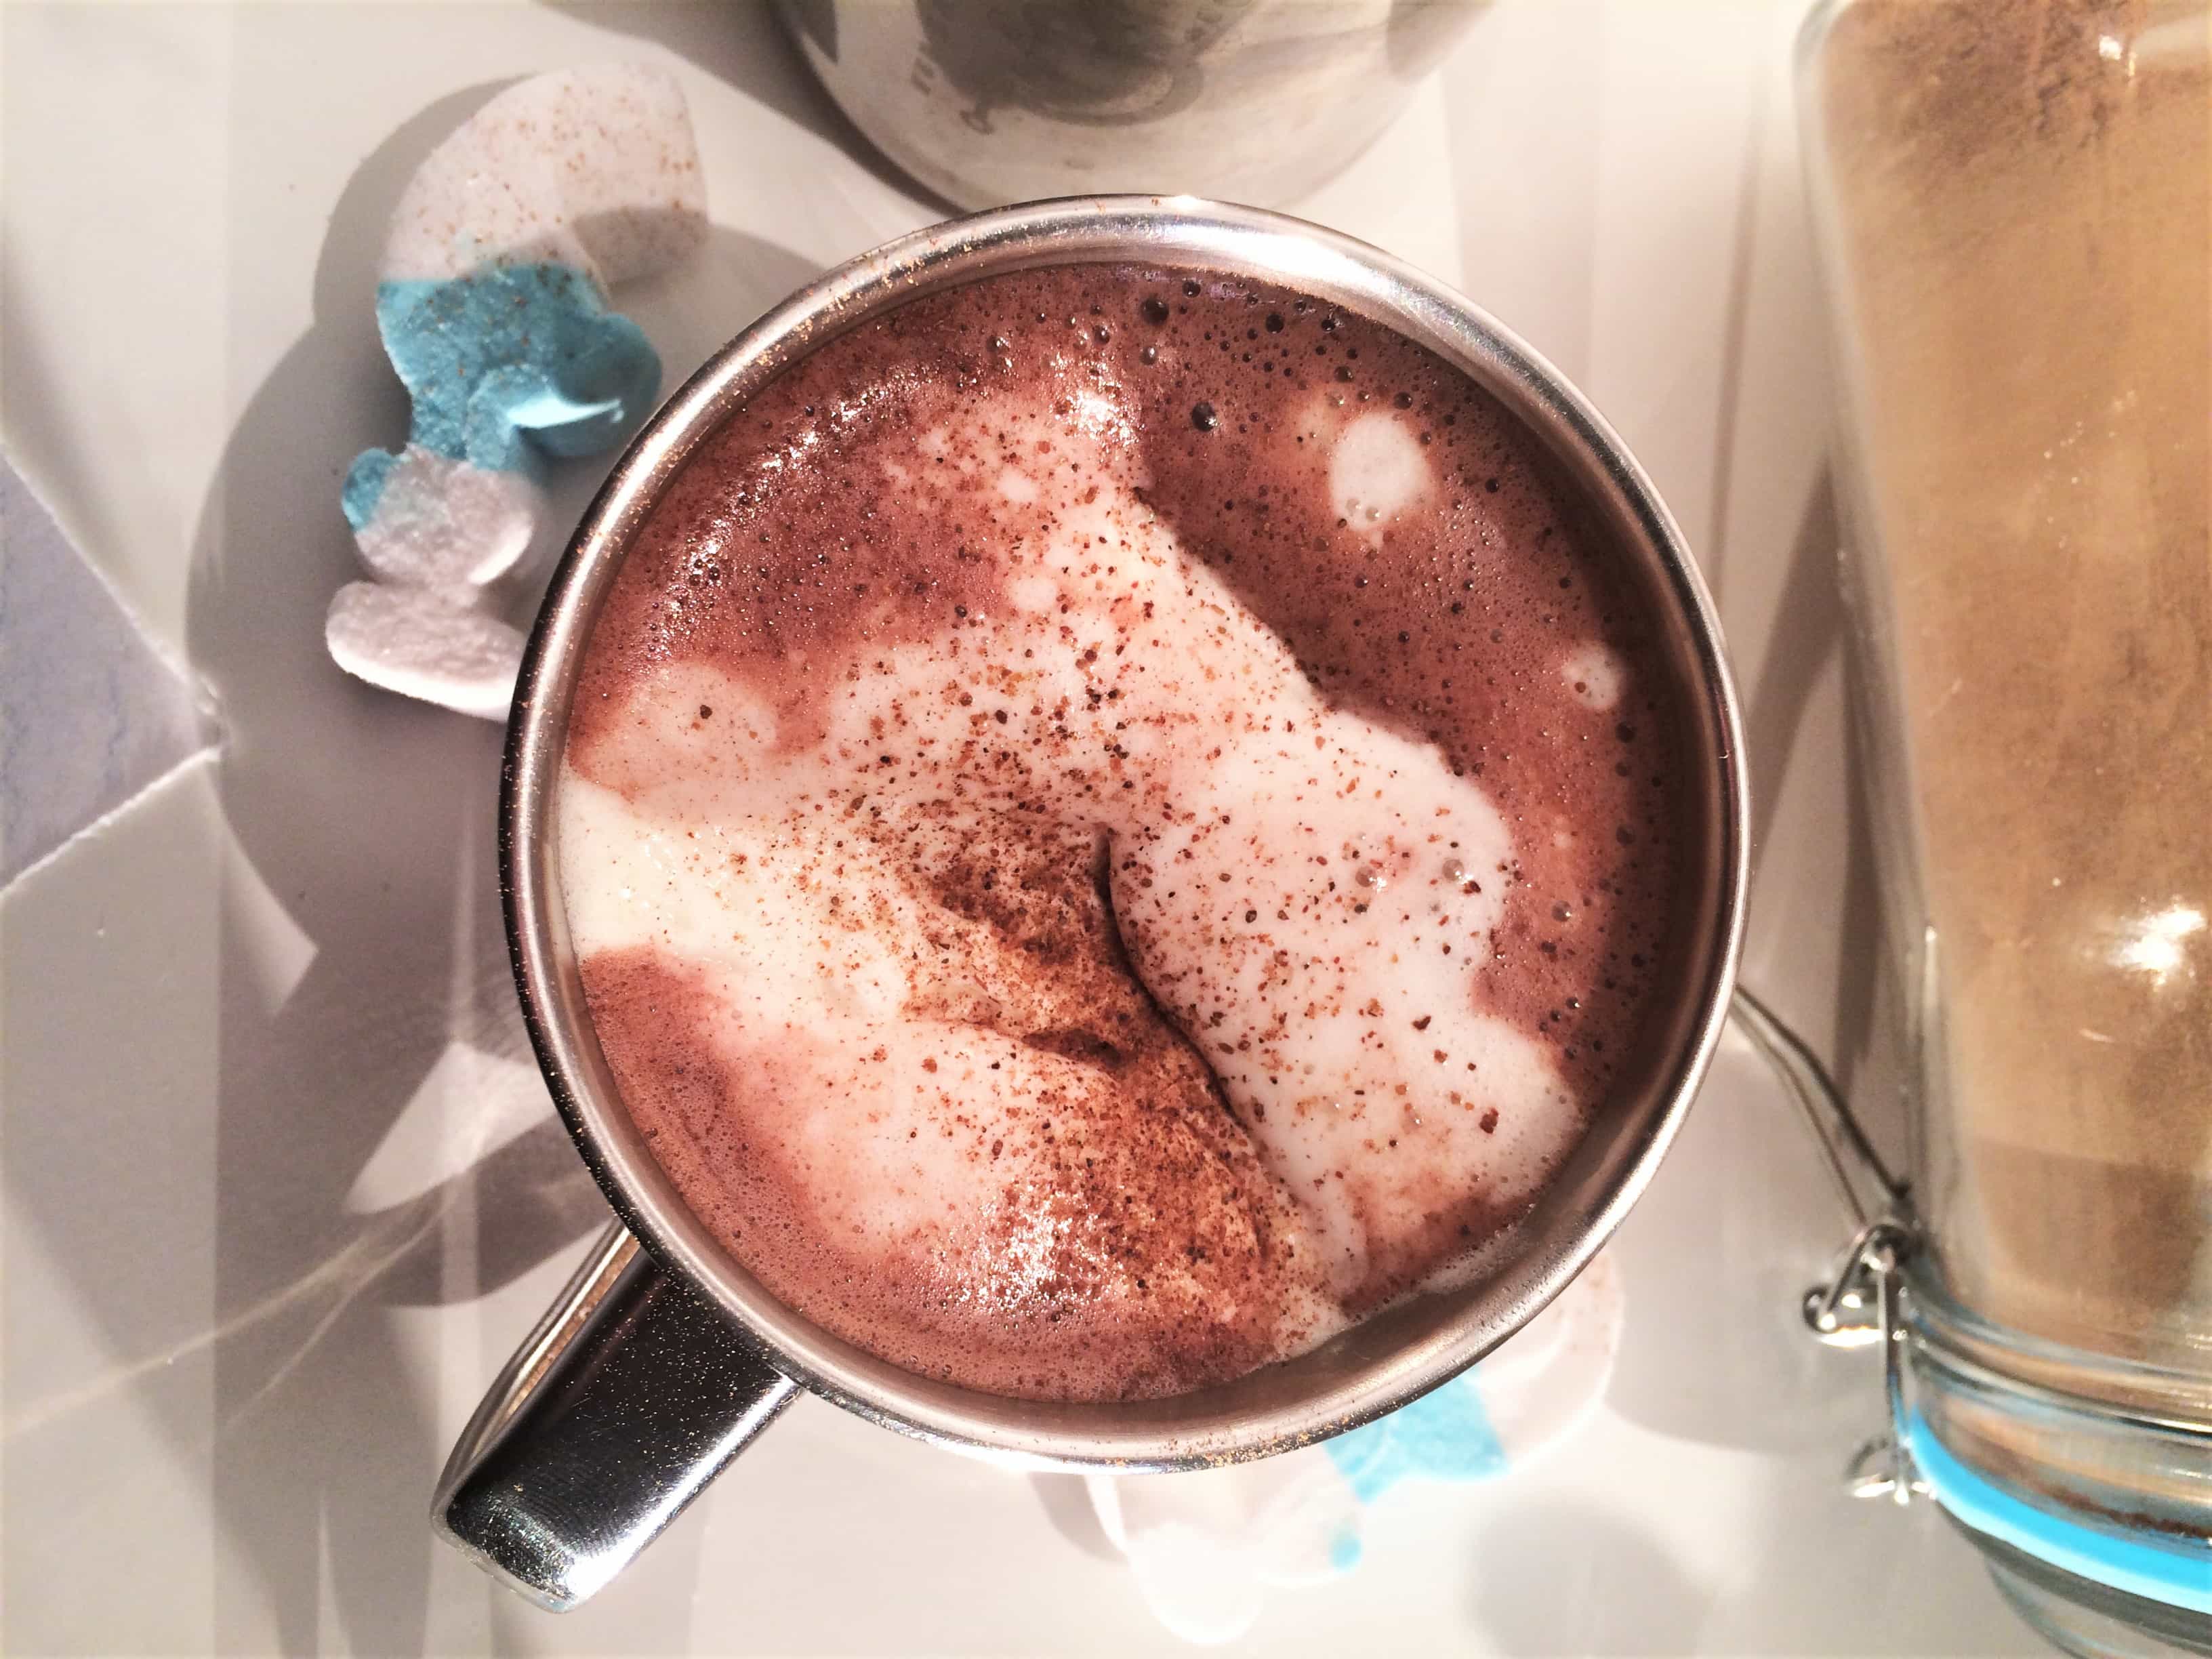 Hot chocolate – heavy, creamy, delicious